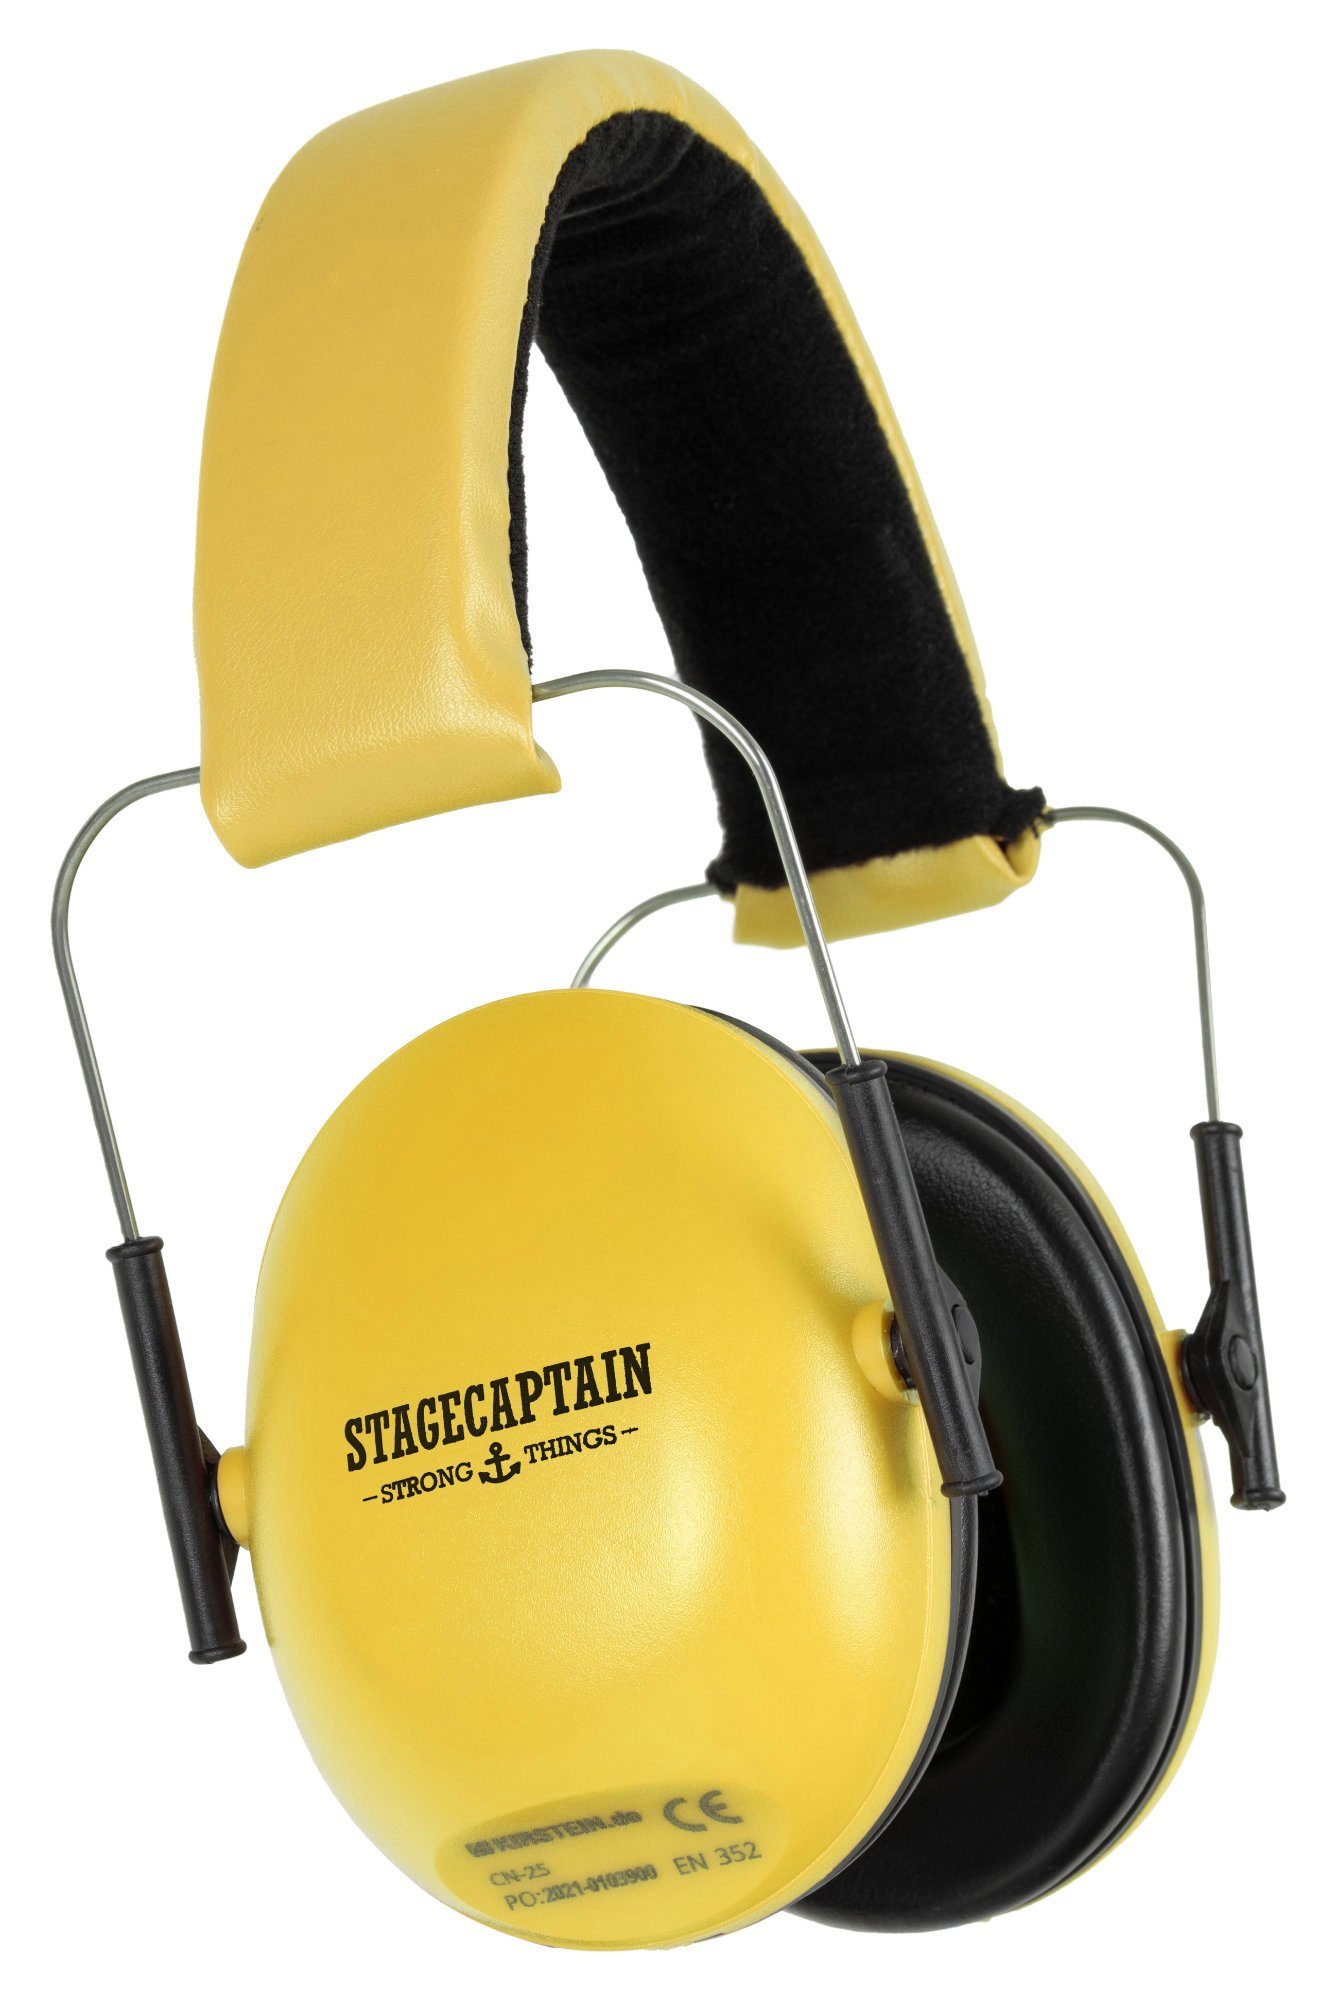 Stagecaptain Bügelgehörschutz Contranoise CN-25 Gehörschutz mit 25 dB Dämpfung, Ohrenschützer für Kinder und Erwachsene Gelb